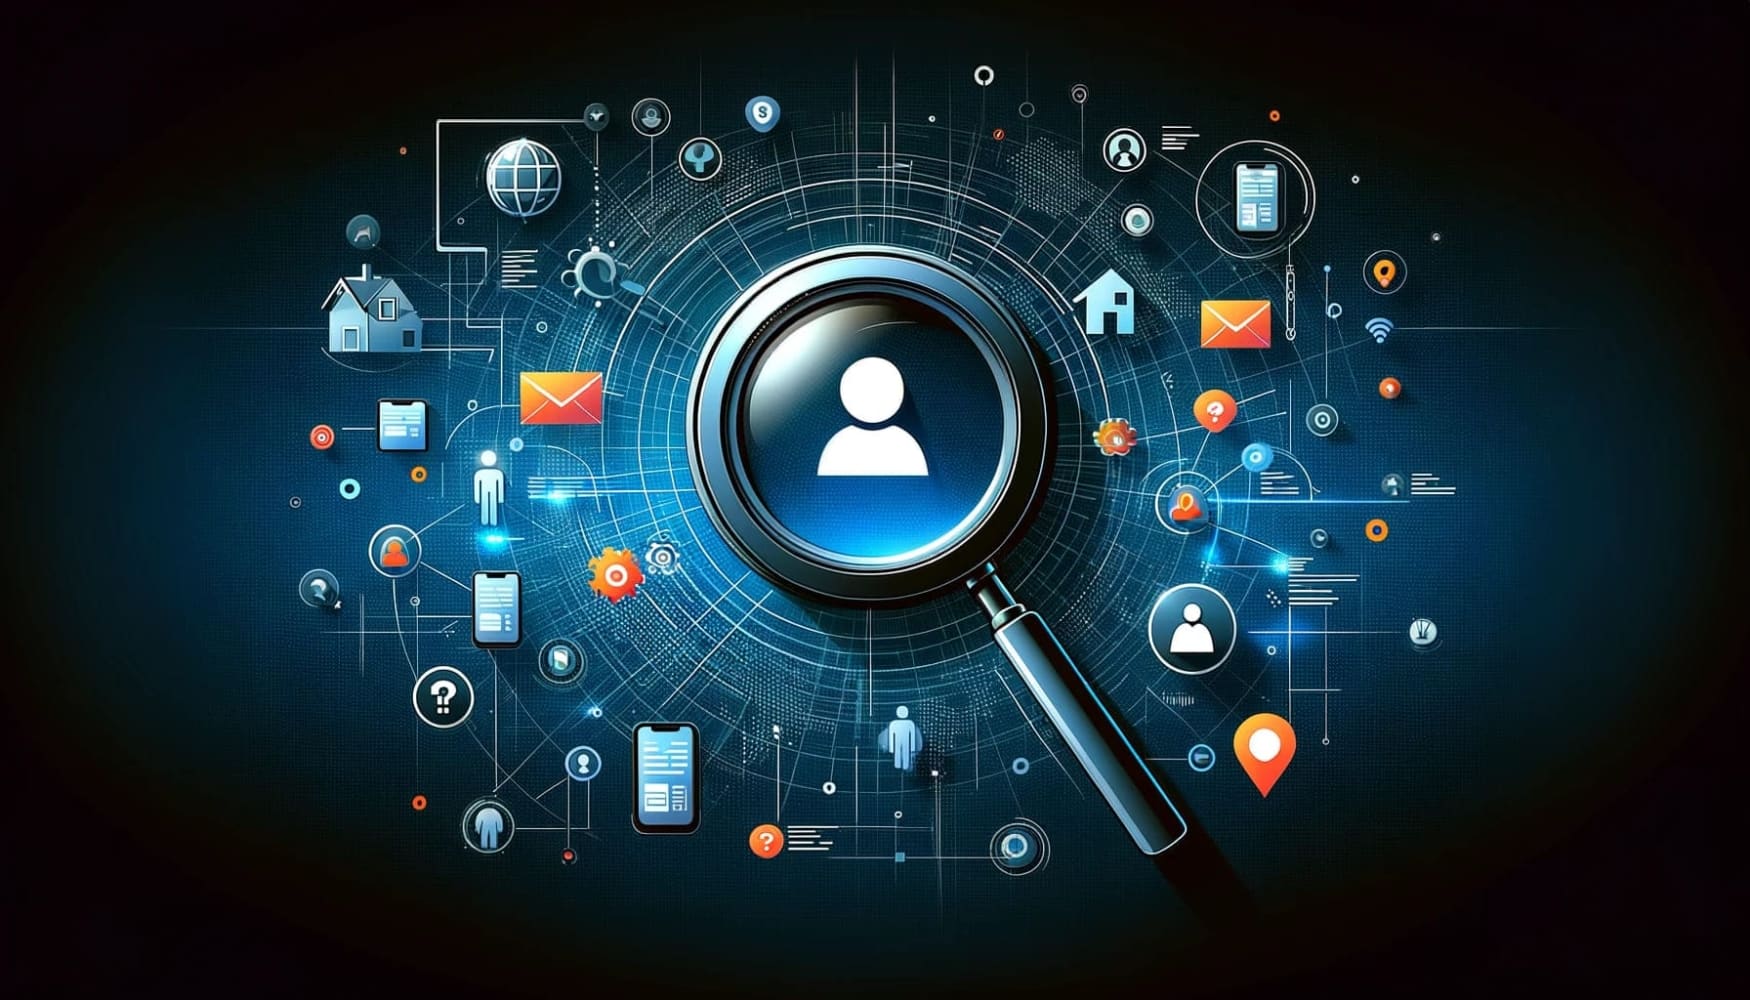 Ilustração de uma lupa sobre um mapa digital, cercada por ícones que representam uma pessoa, uma casa, um telefone e um e-mail, simbolizando o processo de encontrar o endereço de alguém por meio de várias ferramentas de pesquisa.